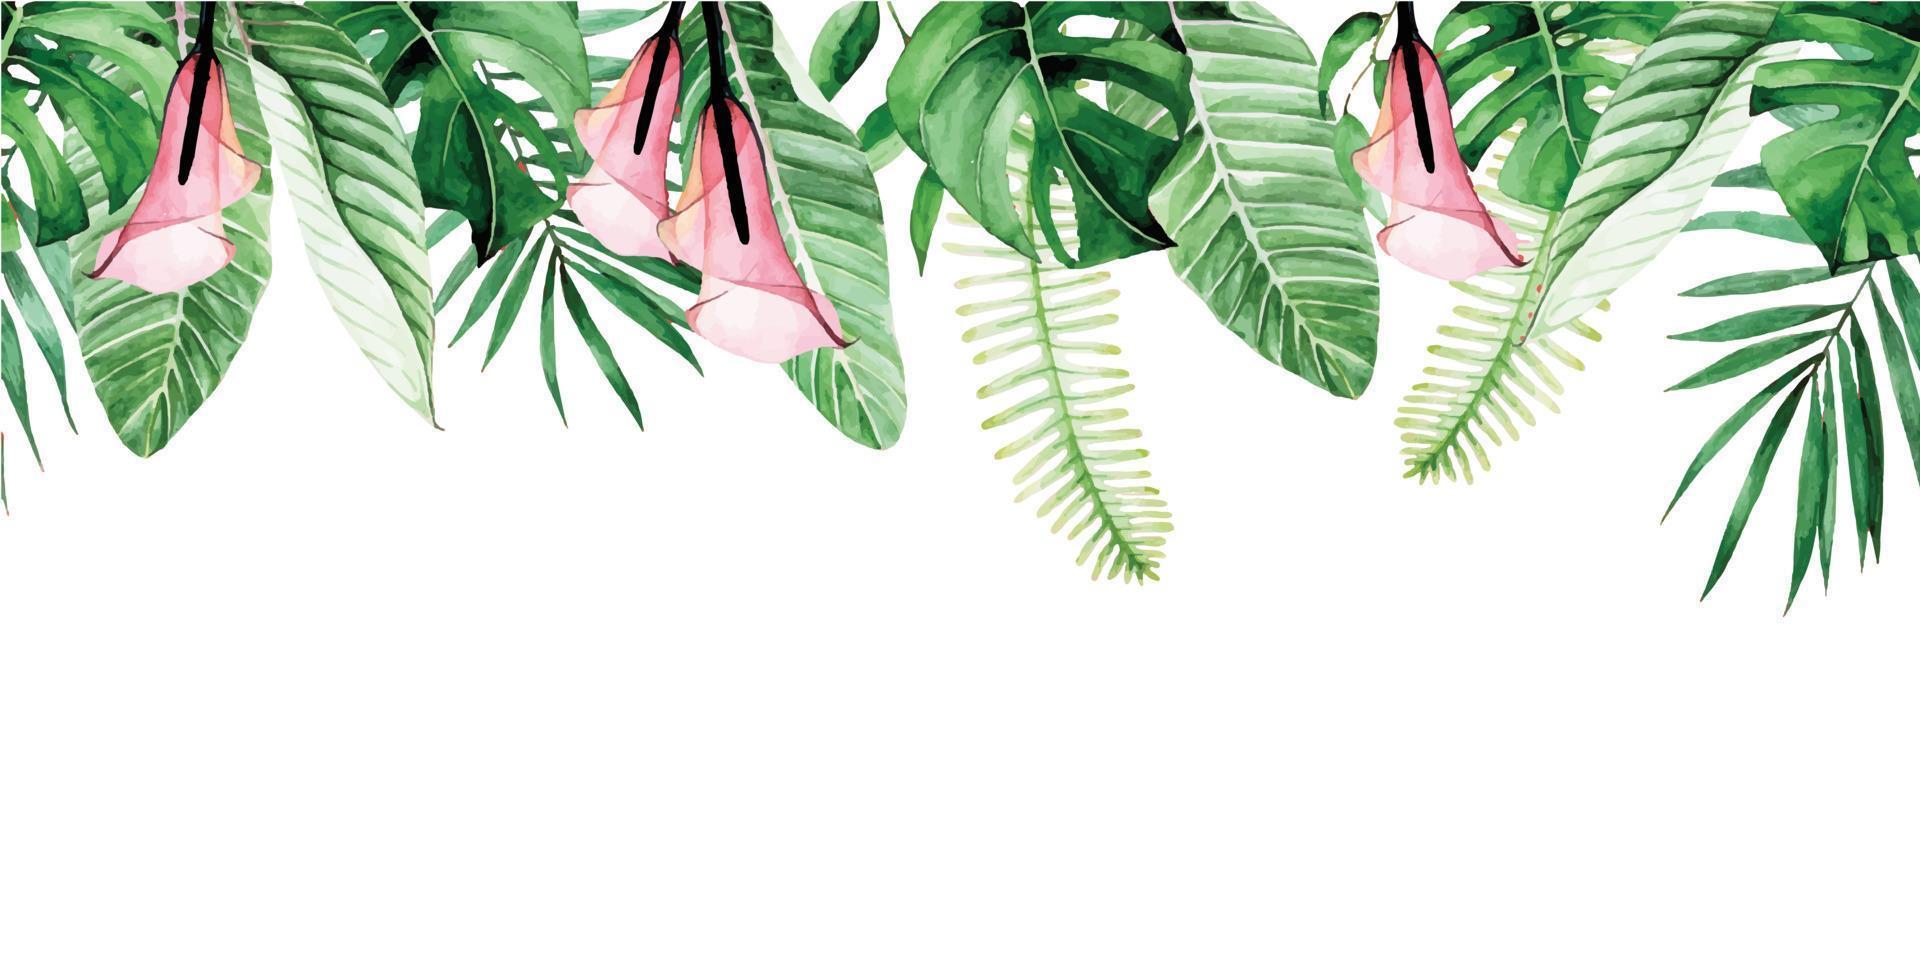 aquarellnahtlose grenze, rahmen mit grünen tropischen blättern und rosa blumen. kala-blumen, palmblätter, monstera, bananenblätter lokalisiert auf weißem hintergrund. Muster, Druck, Webbanner vektor